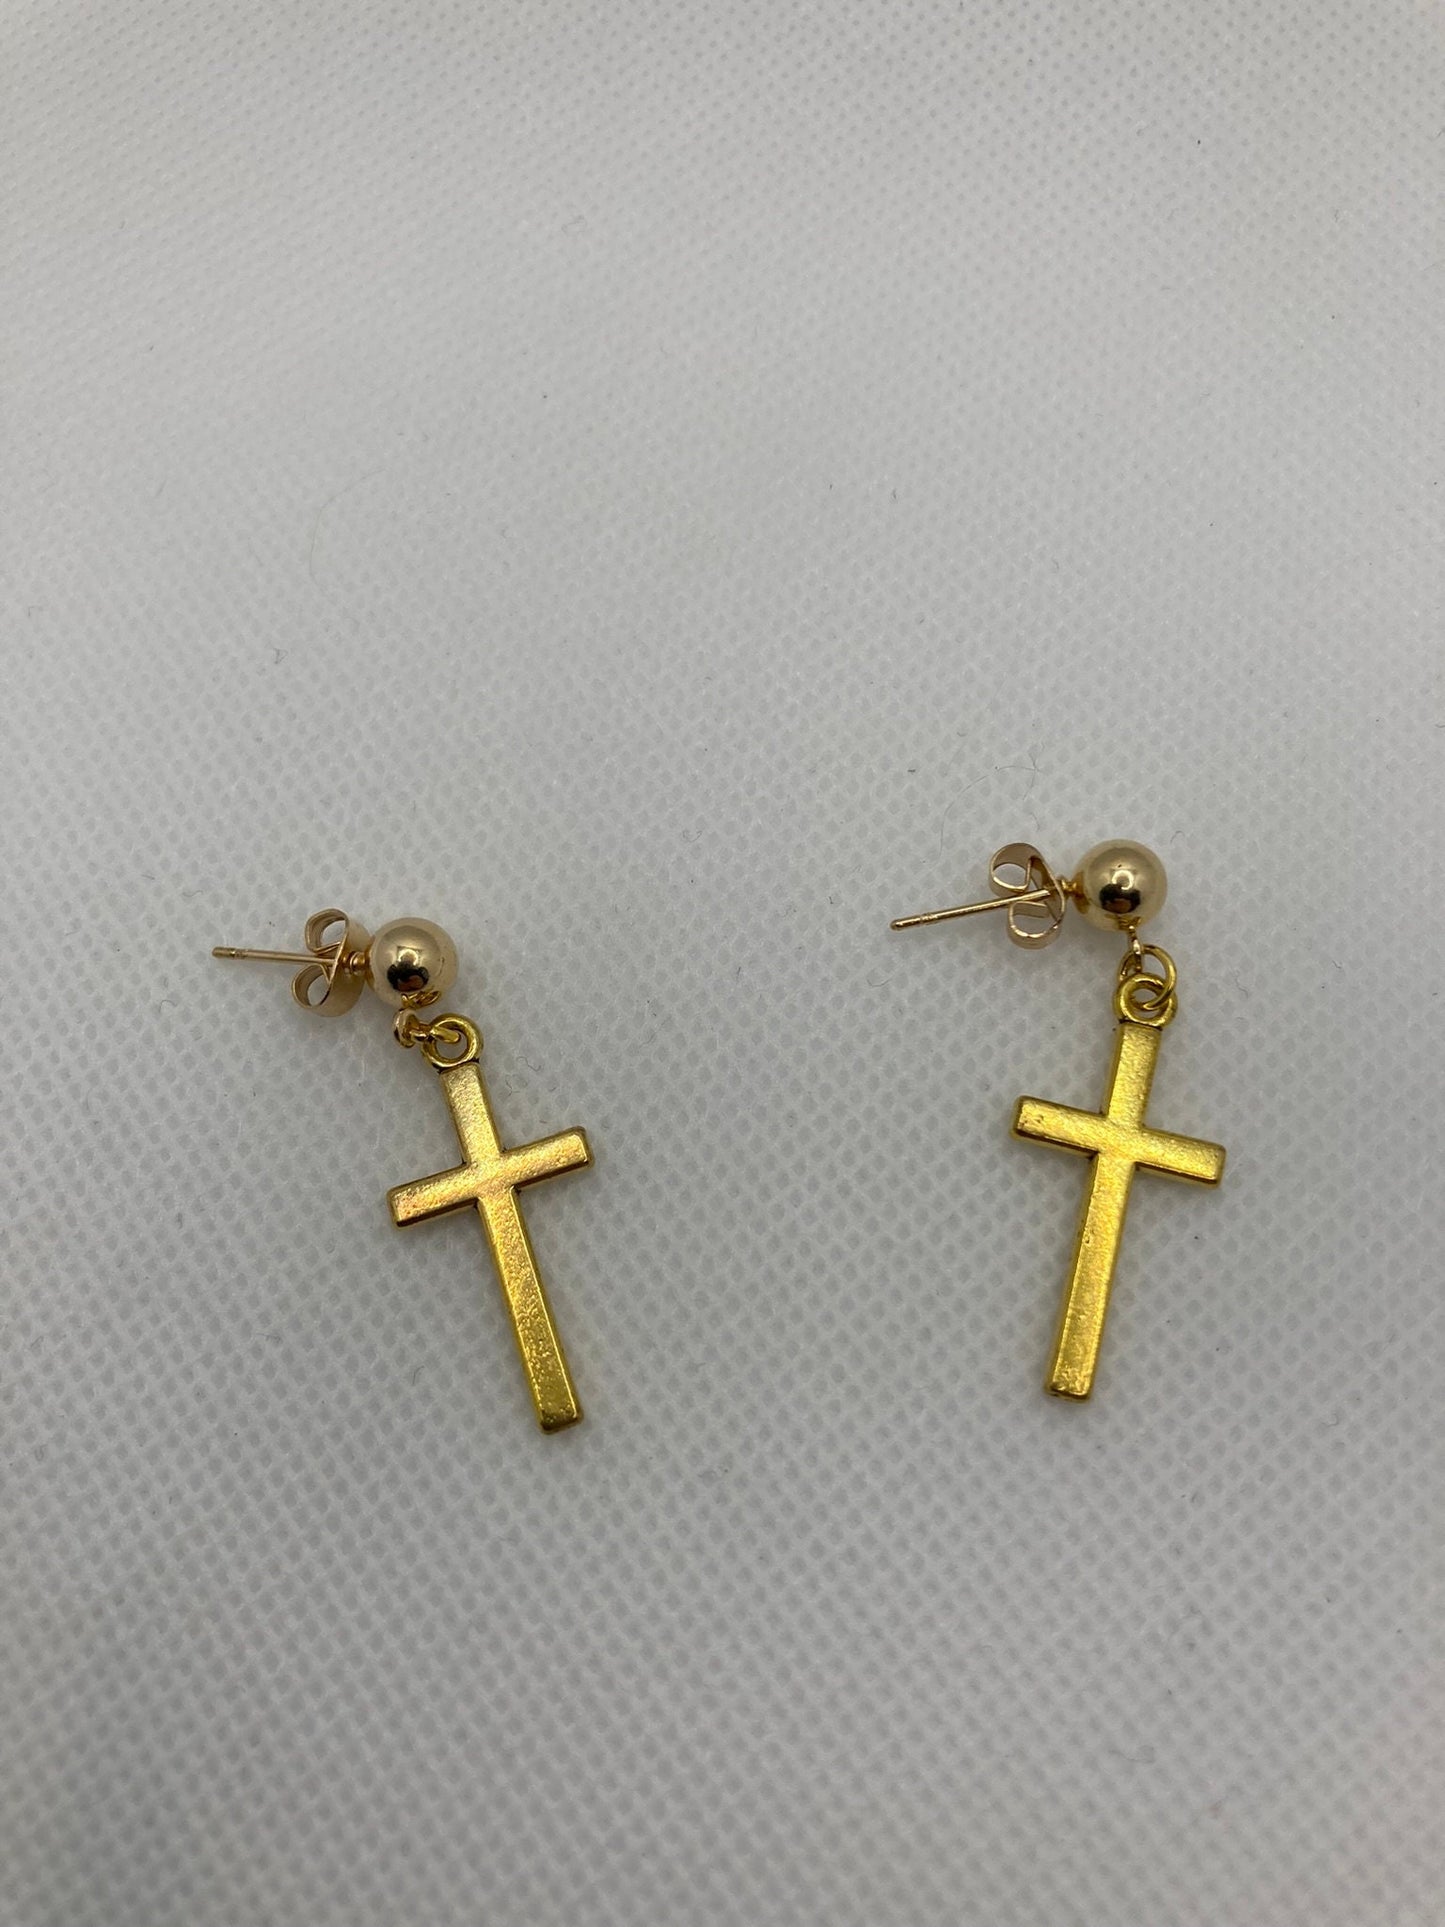 Gold cross earring Stud, dangle Earring, Religious, Southwest, Jewelry Style 5